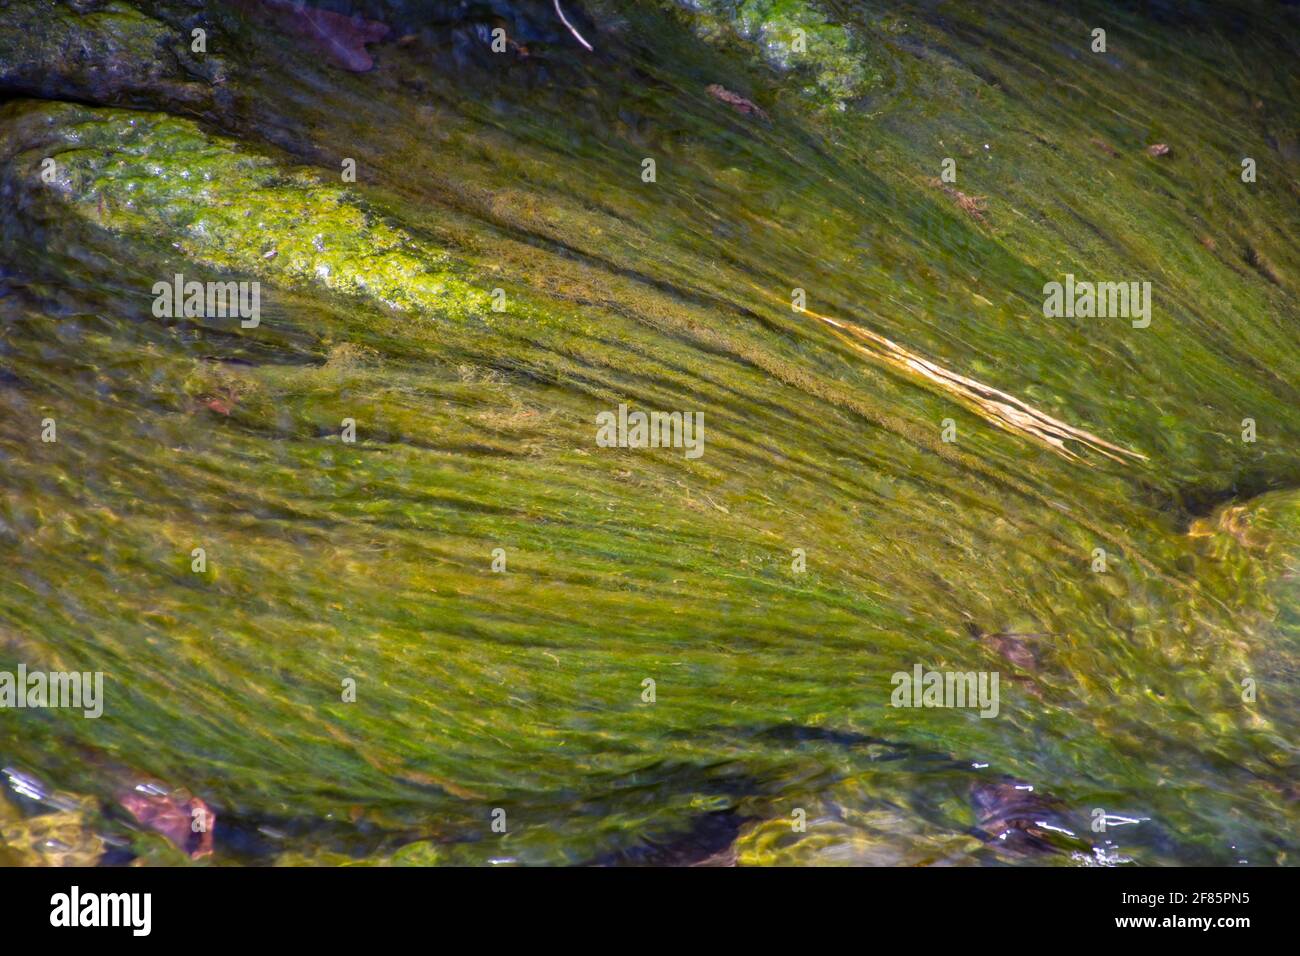 Algues vertes et eau claire d'un petit ruisseau pour un fond vert naturel Banque D'Images